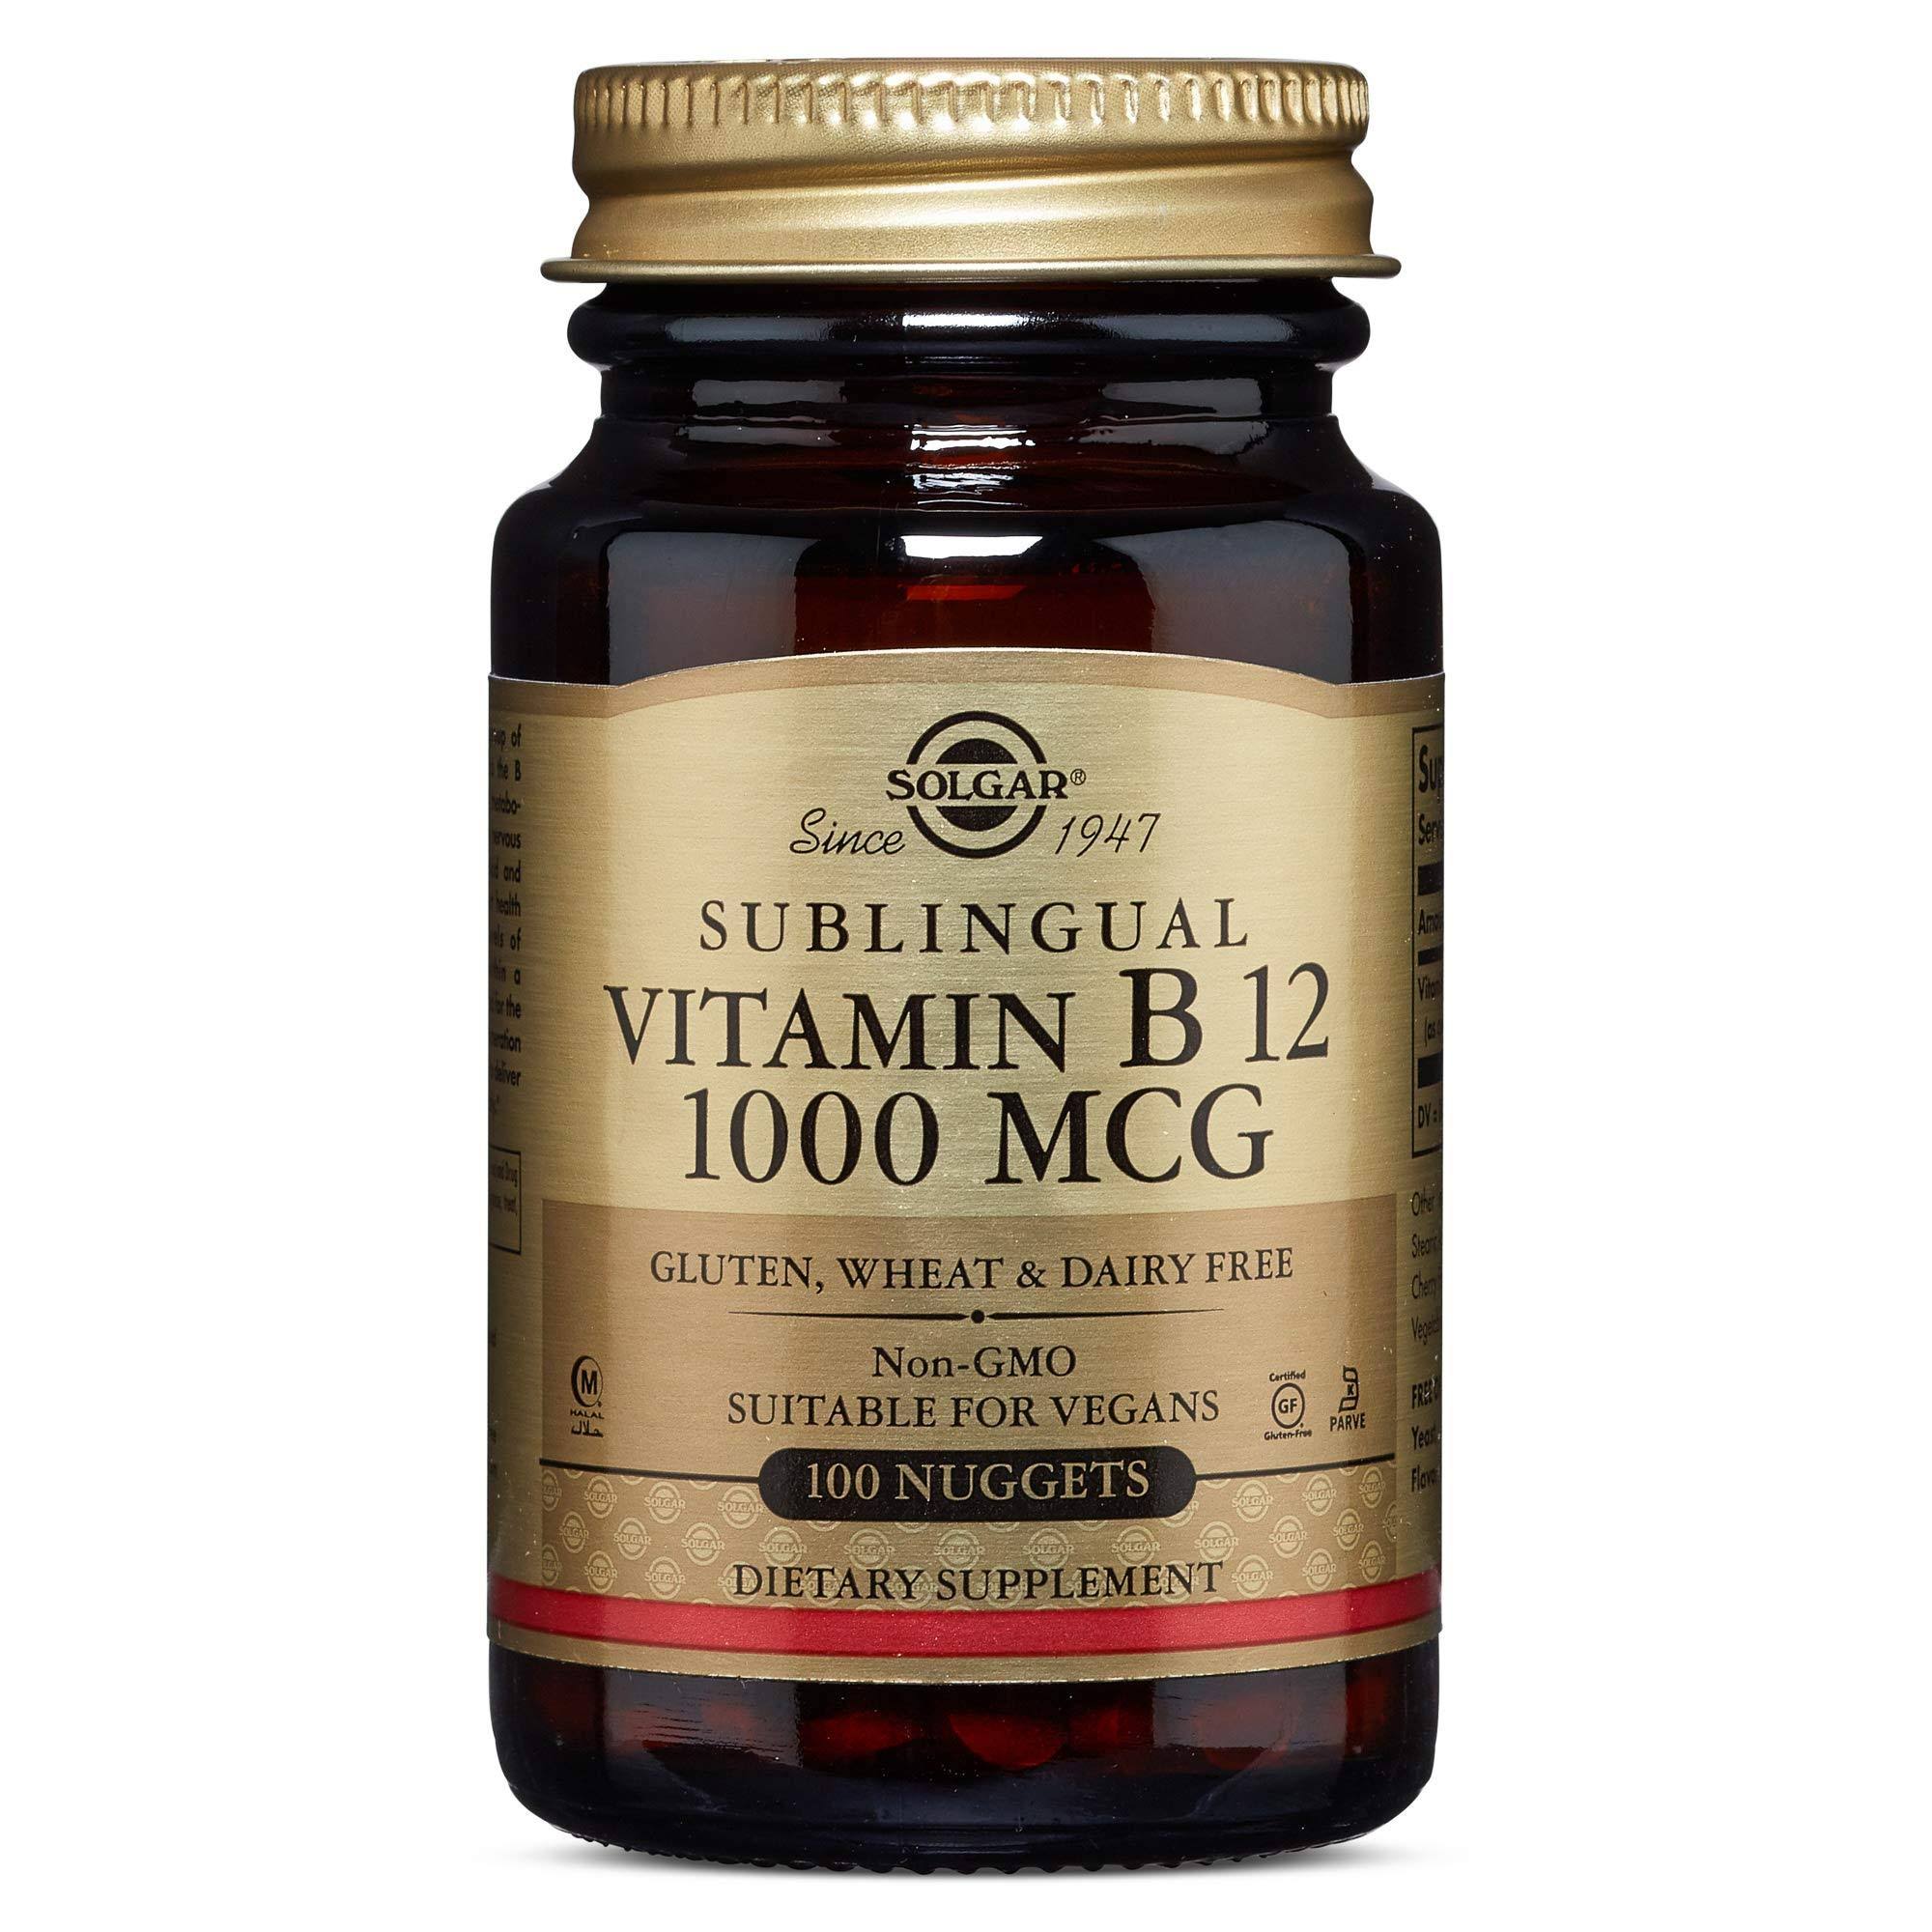 Solgar Sublingual Vitamin B-12 1000mcg - 100 Nuggets